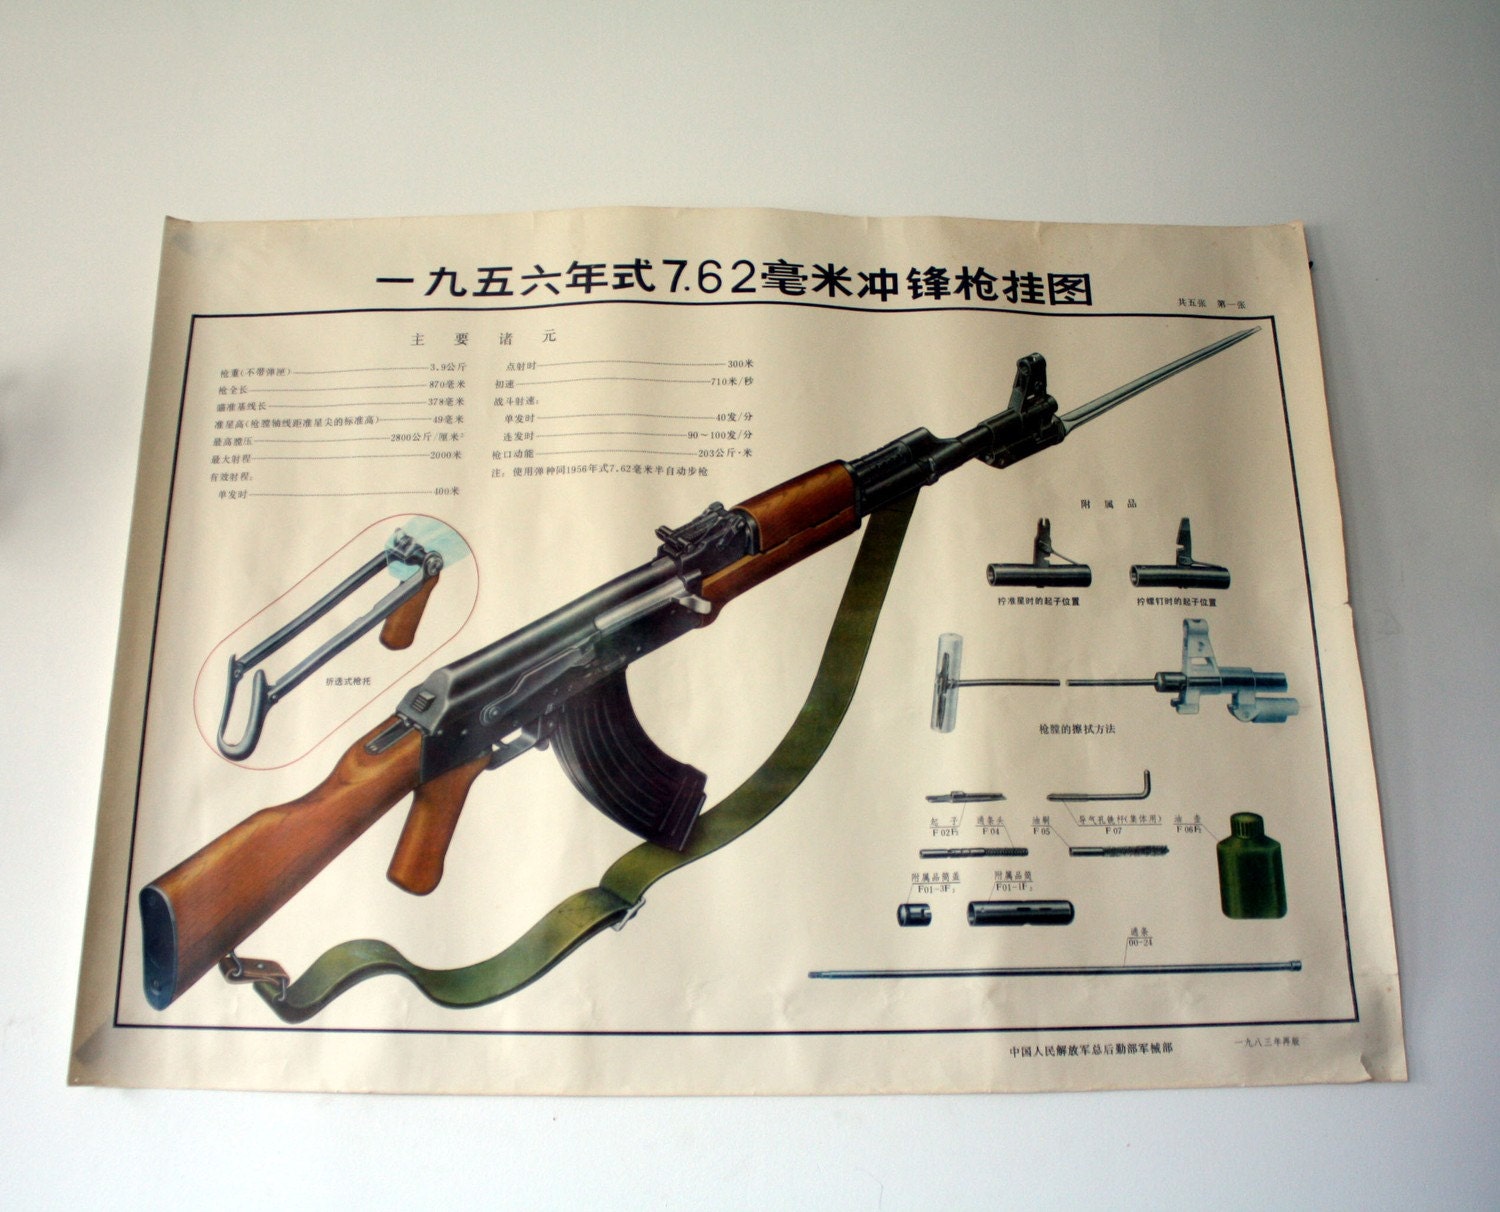 Ak47 Poster